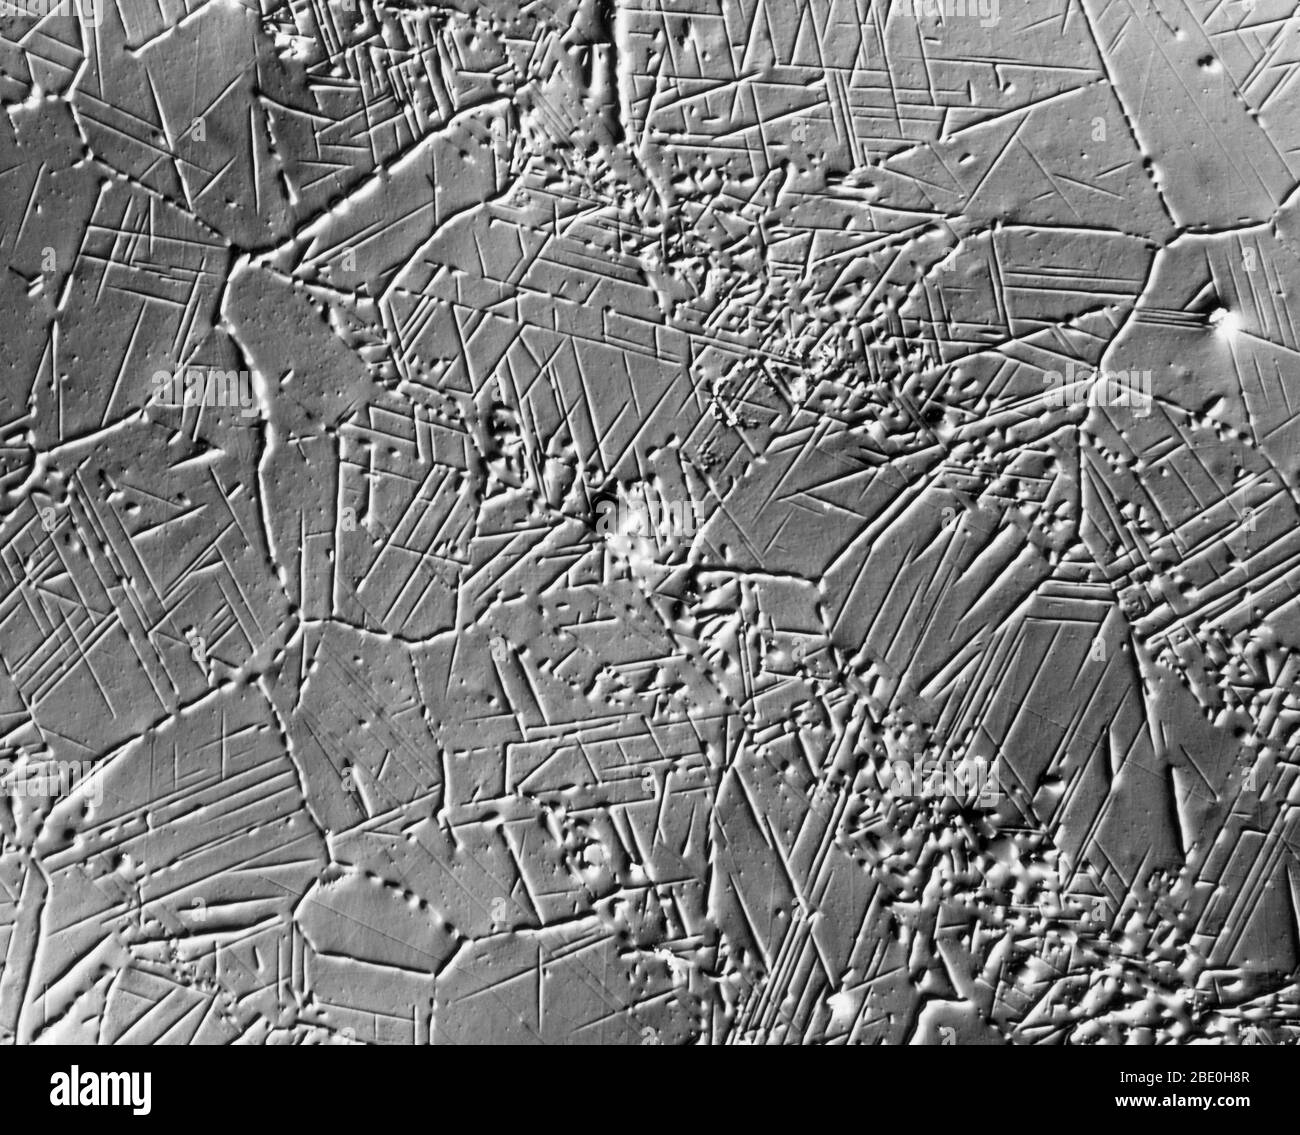 Micrografia elettronica a scansione (SEM) che mostra cristallizzazione in fase sigma in acciaio. Ingrandimento: 500X a 8x10'. Metodo di contrasto con interferenza Nomarski. Foto Stock